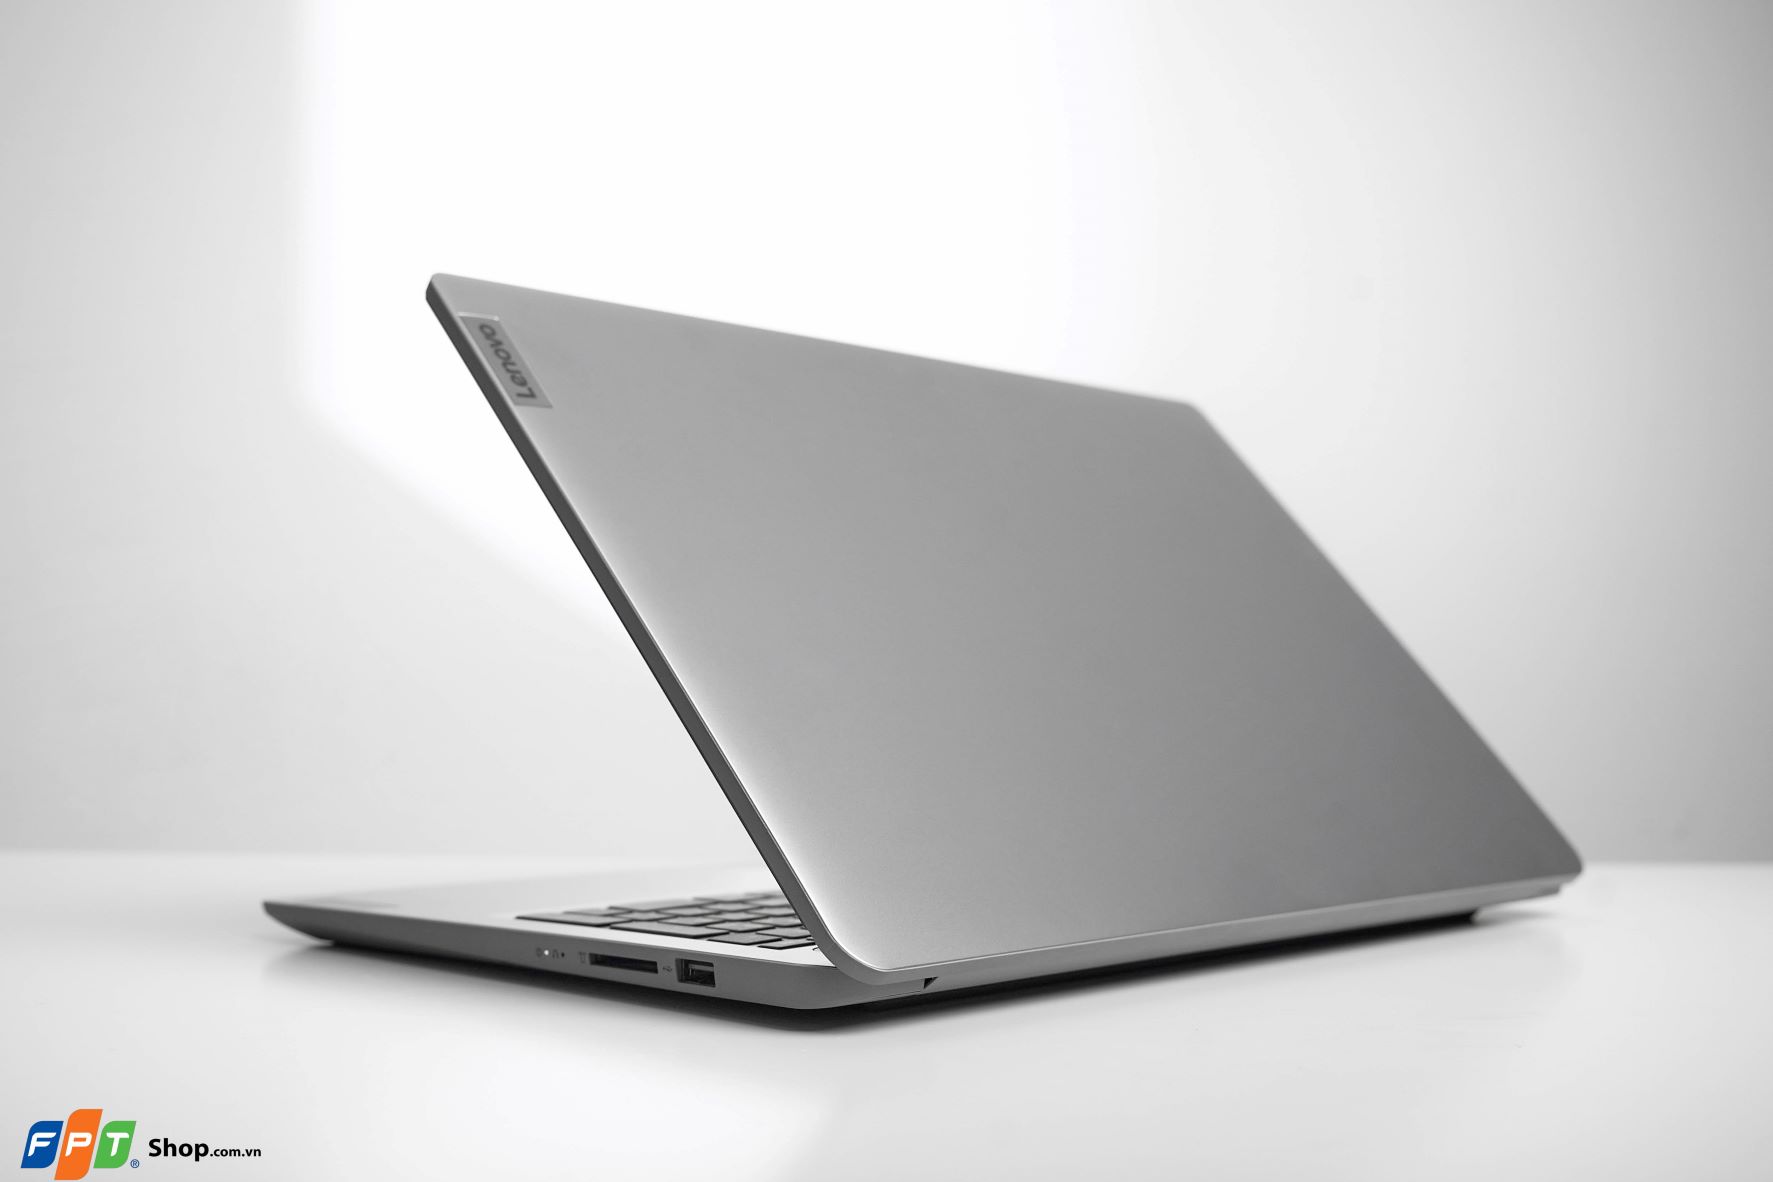 FPT Shop độc quyền phân phối laptop Lenovo AMD với giá chỉ hơn 12 triệu đồng